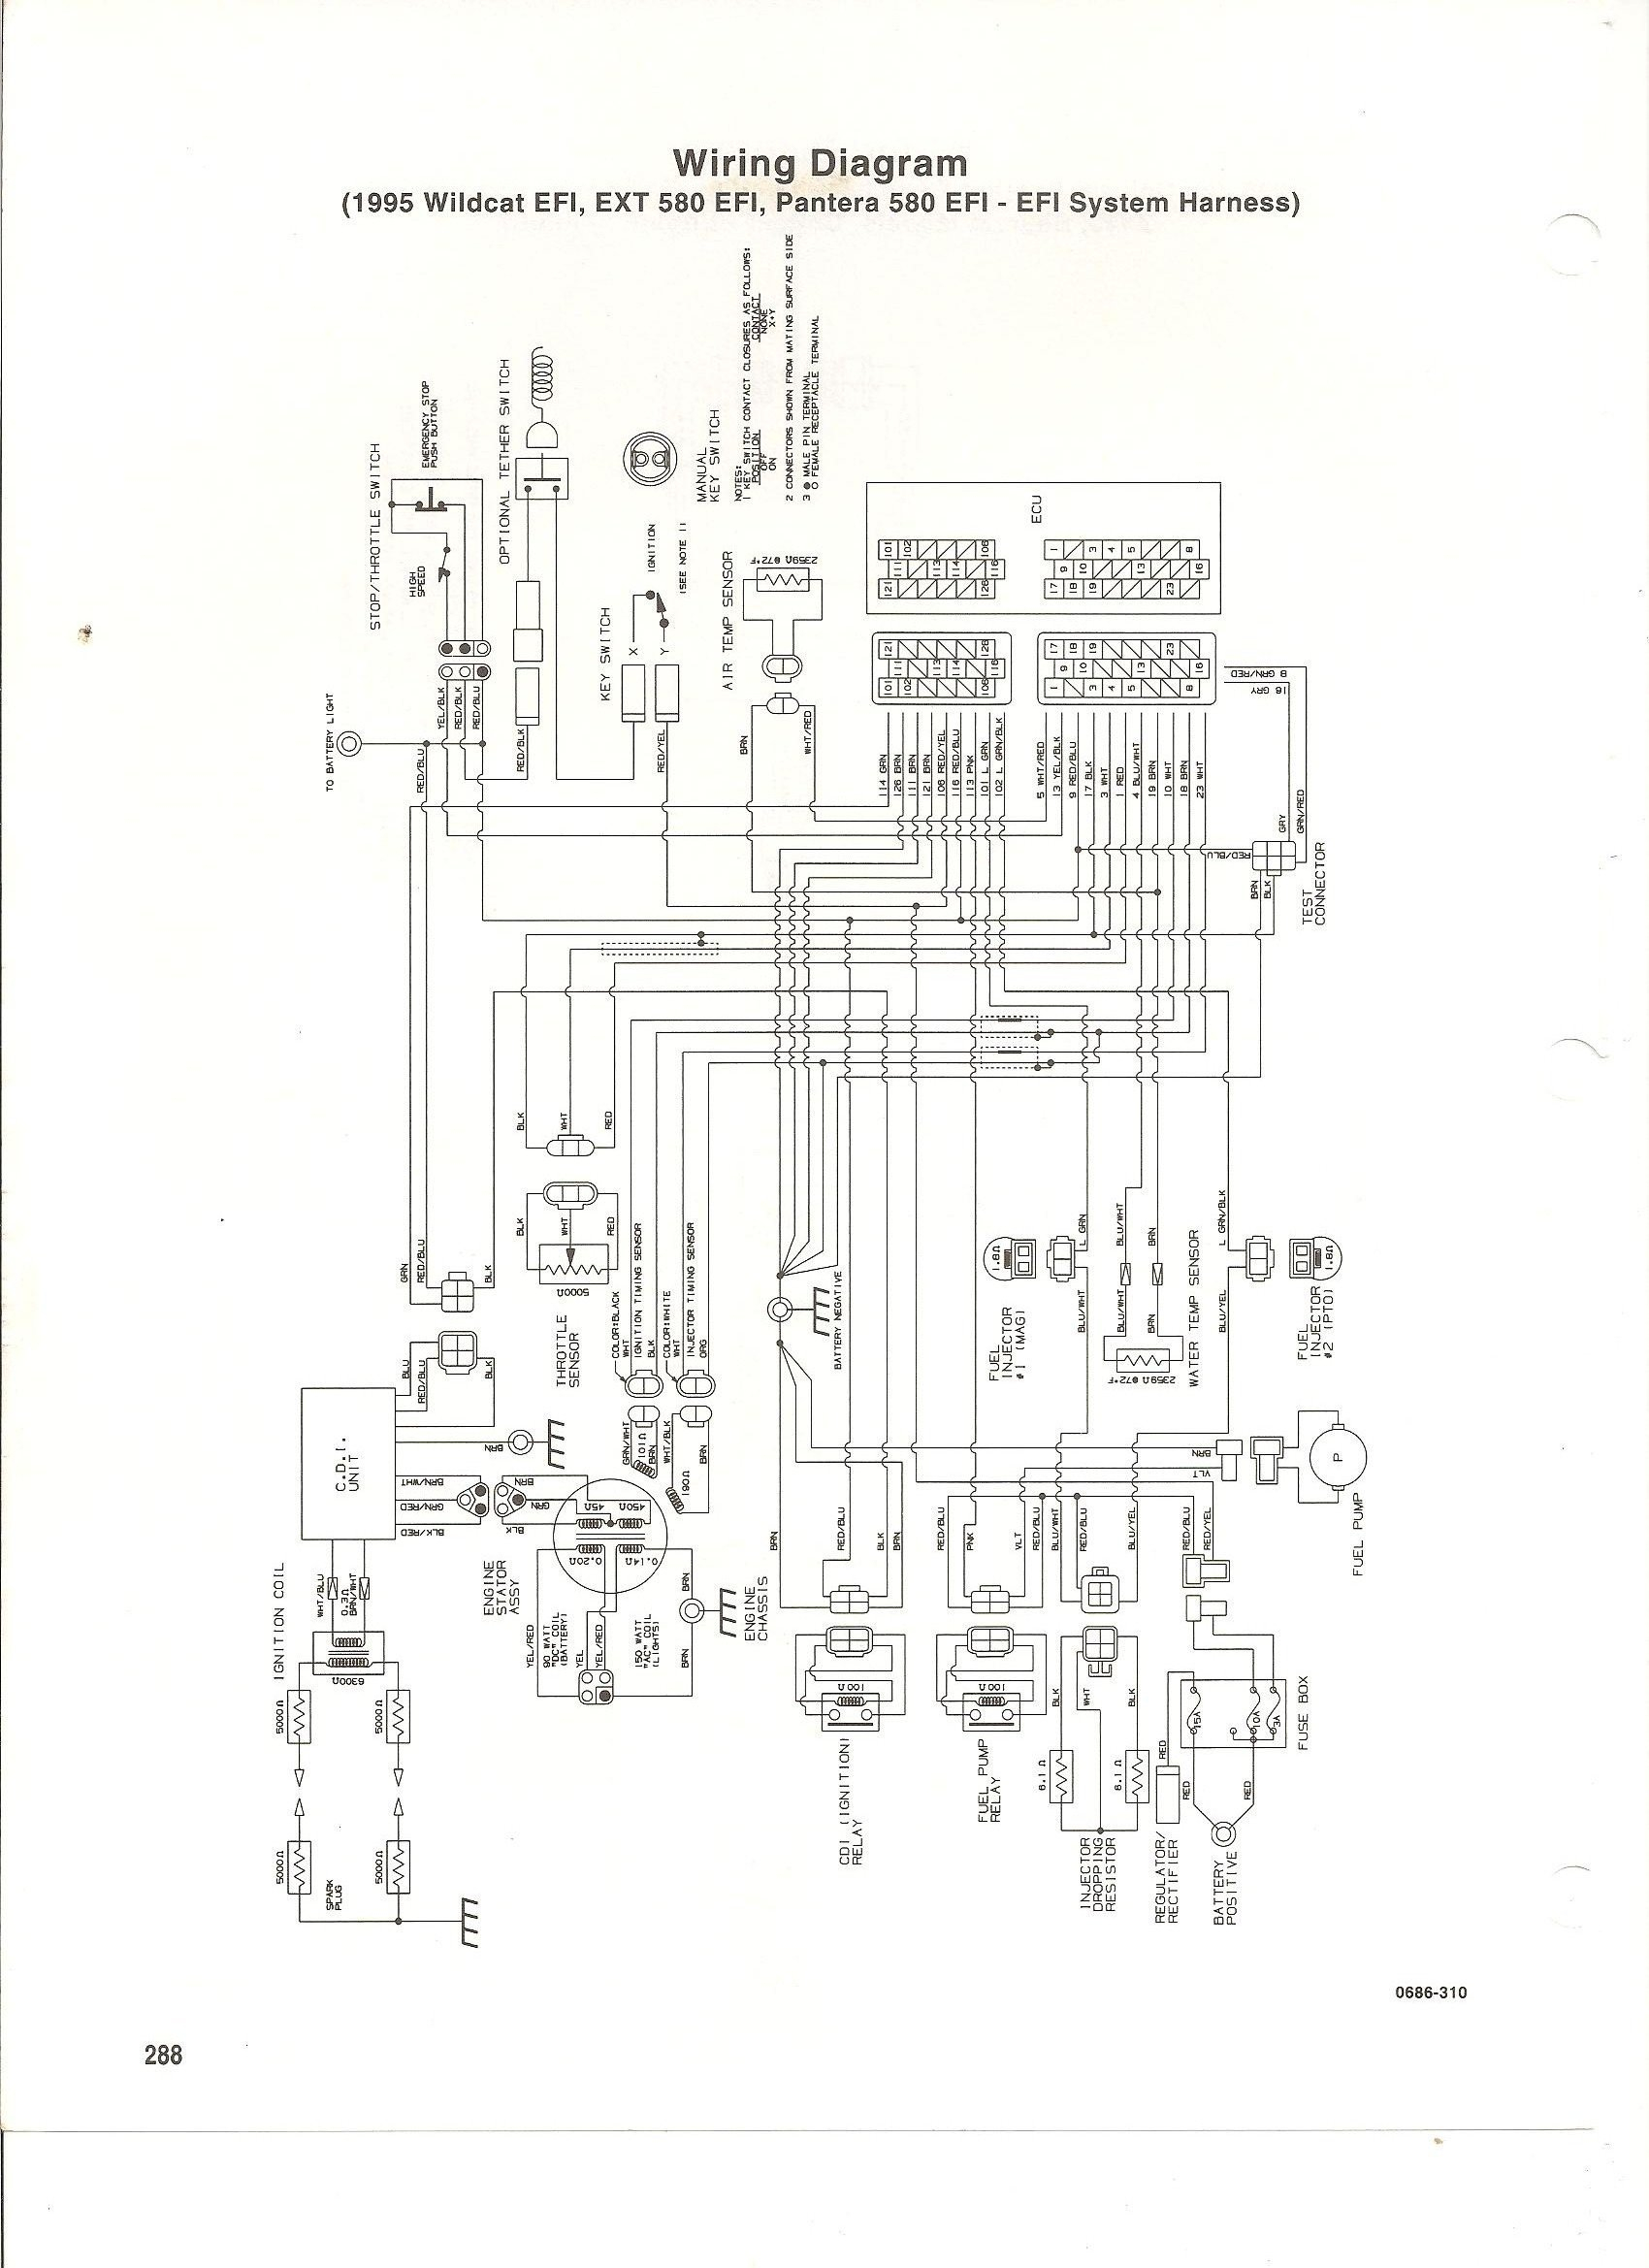 1994 Arctic Cat Ext 580 Wiring Diagram